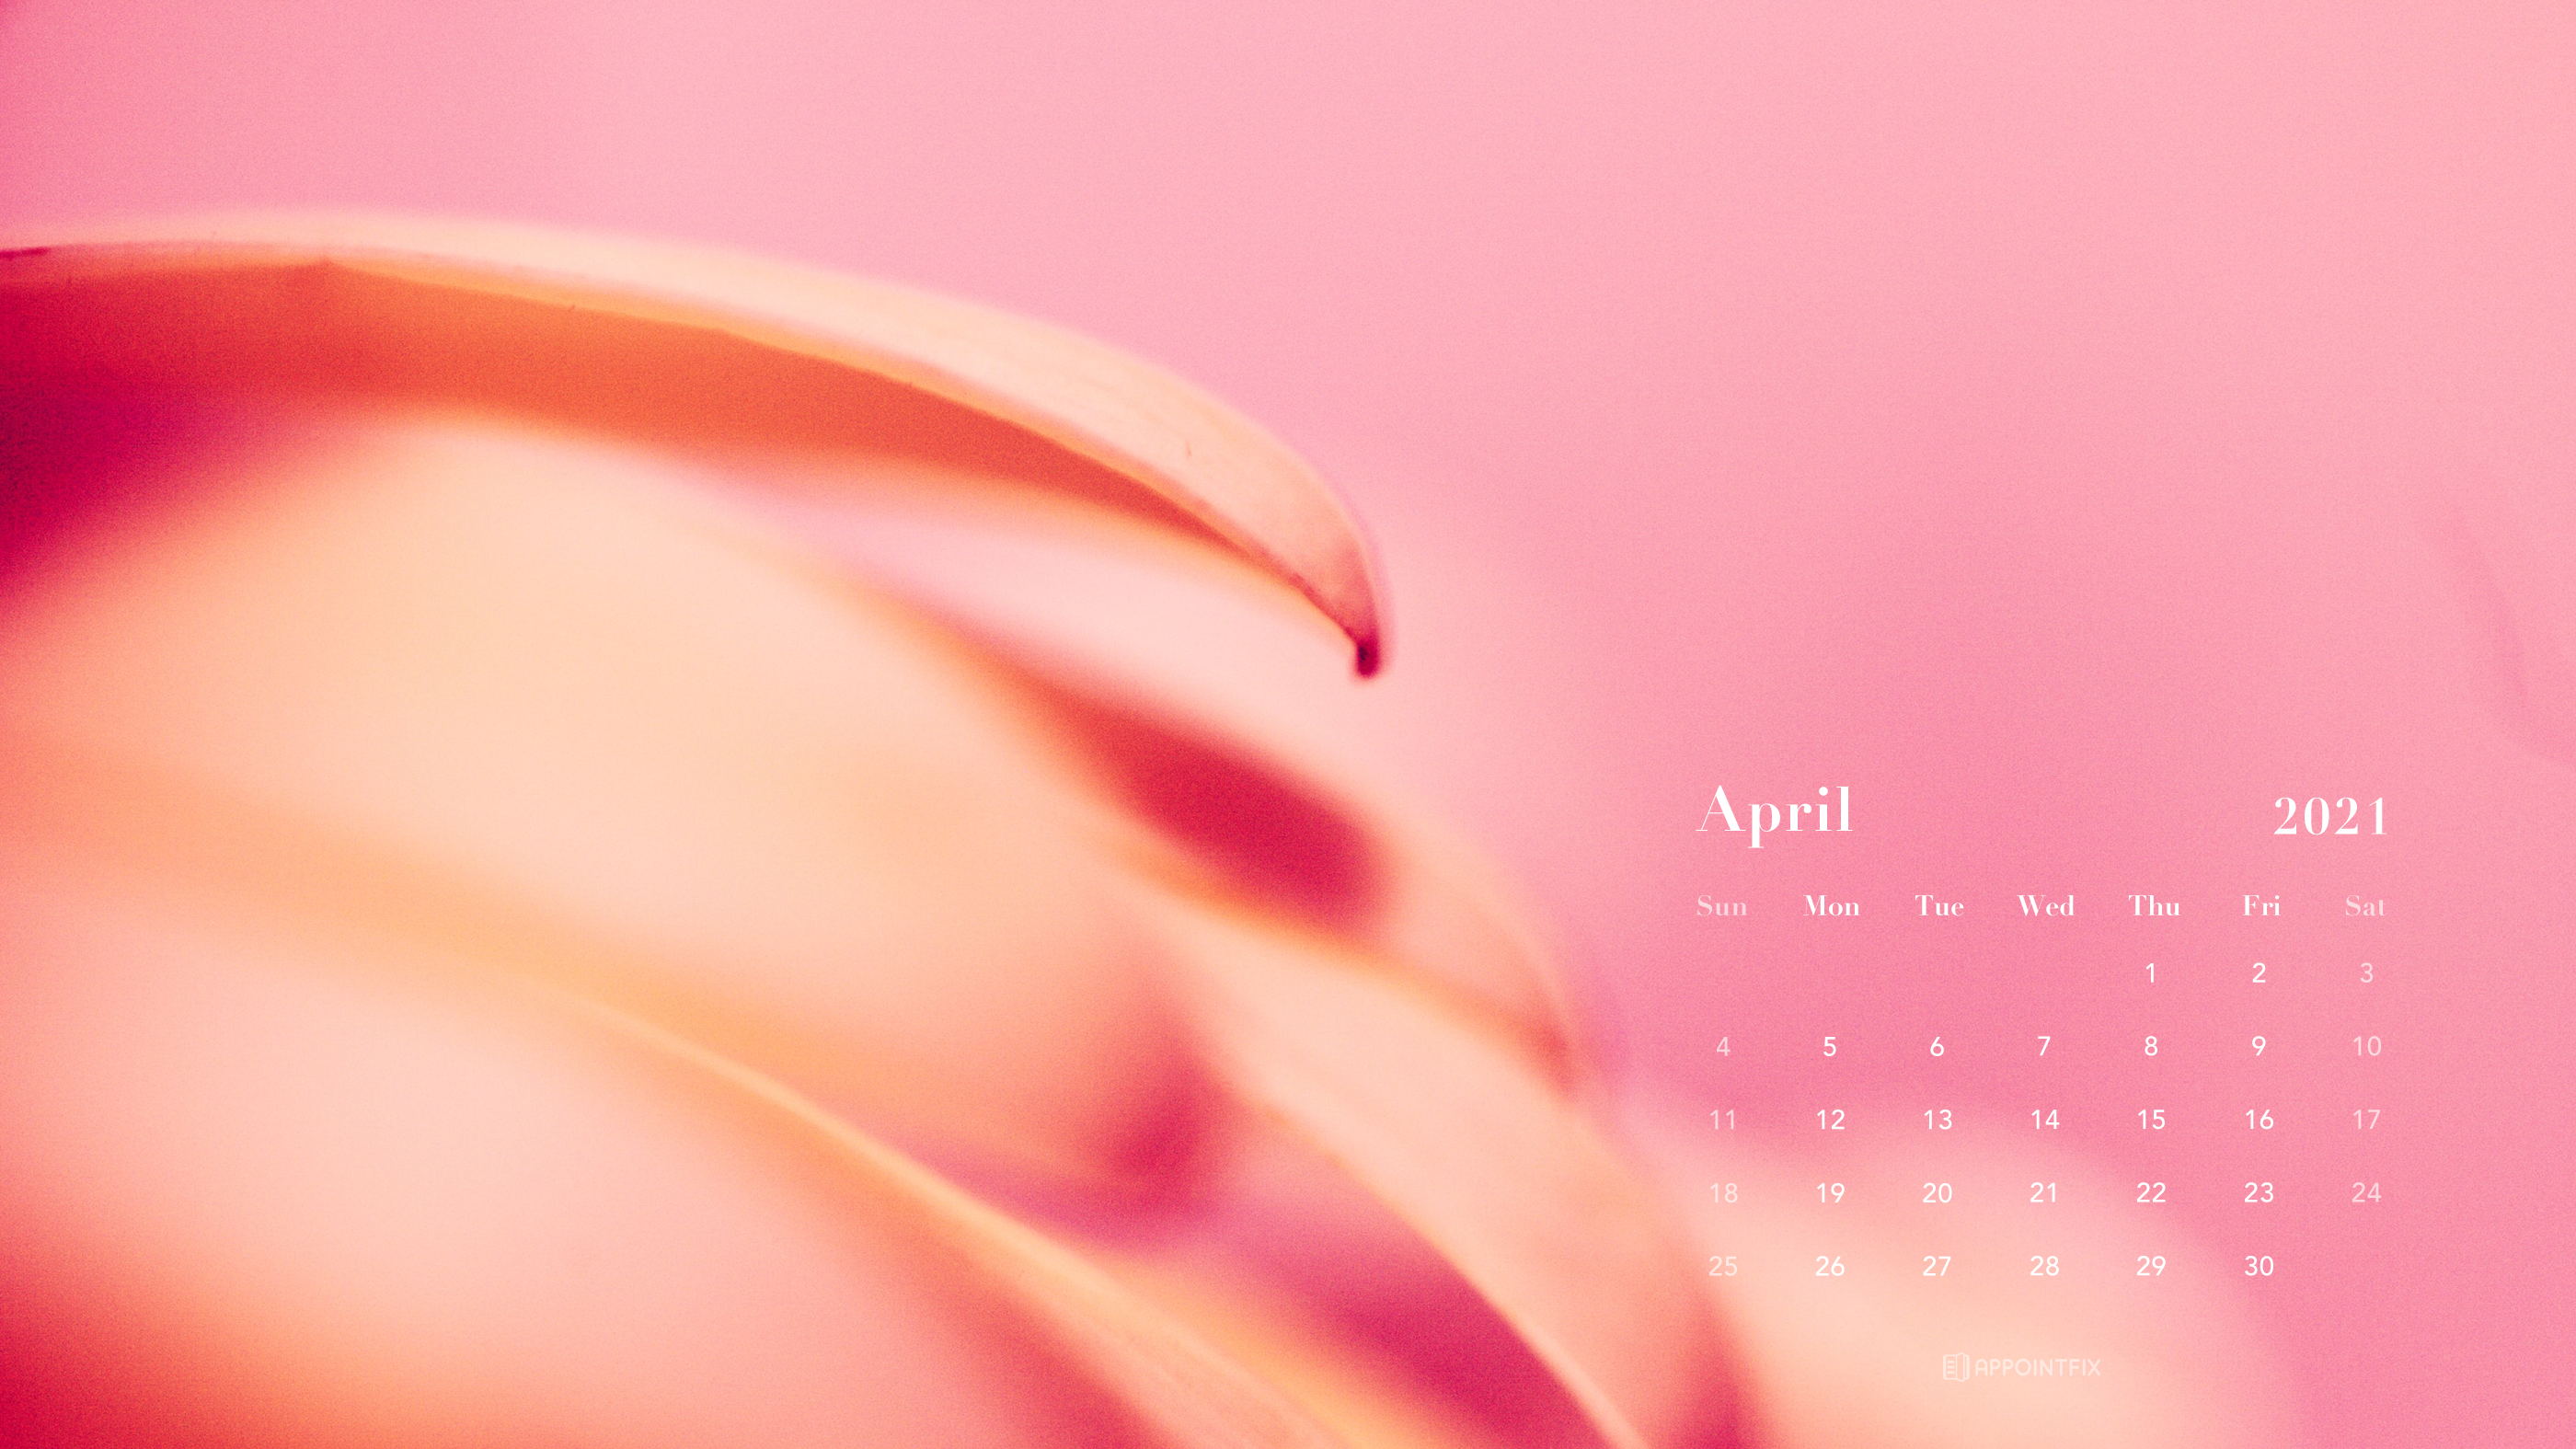 Free April 2021 Calendar Wallpapers – Desktop & Mobile